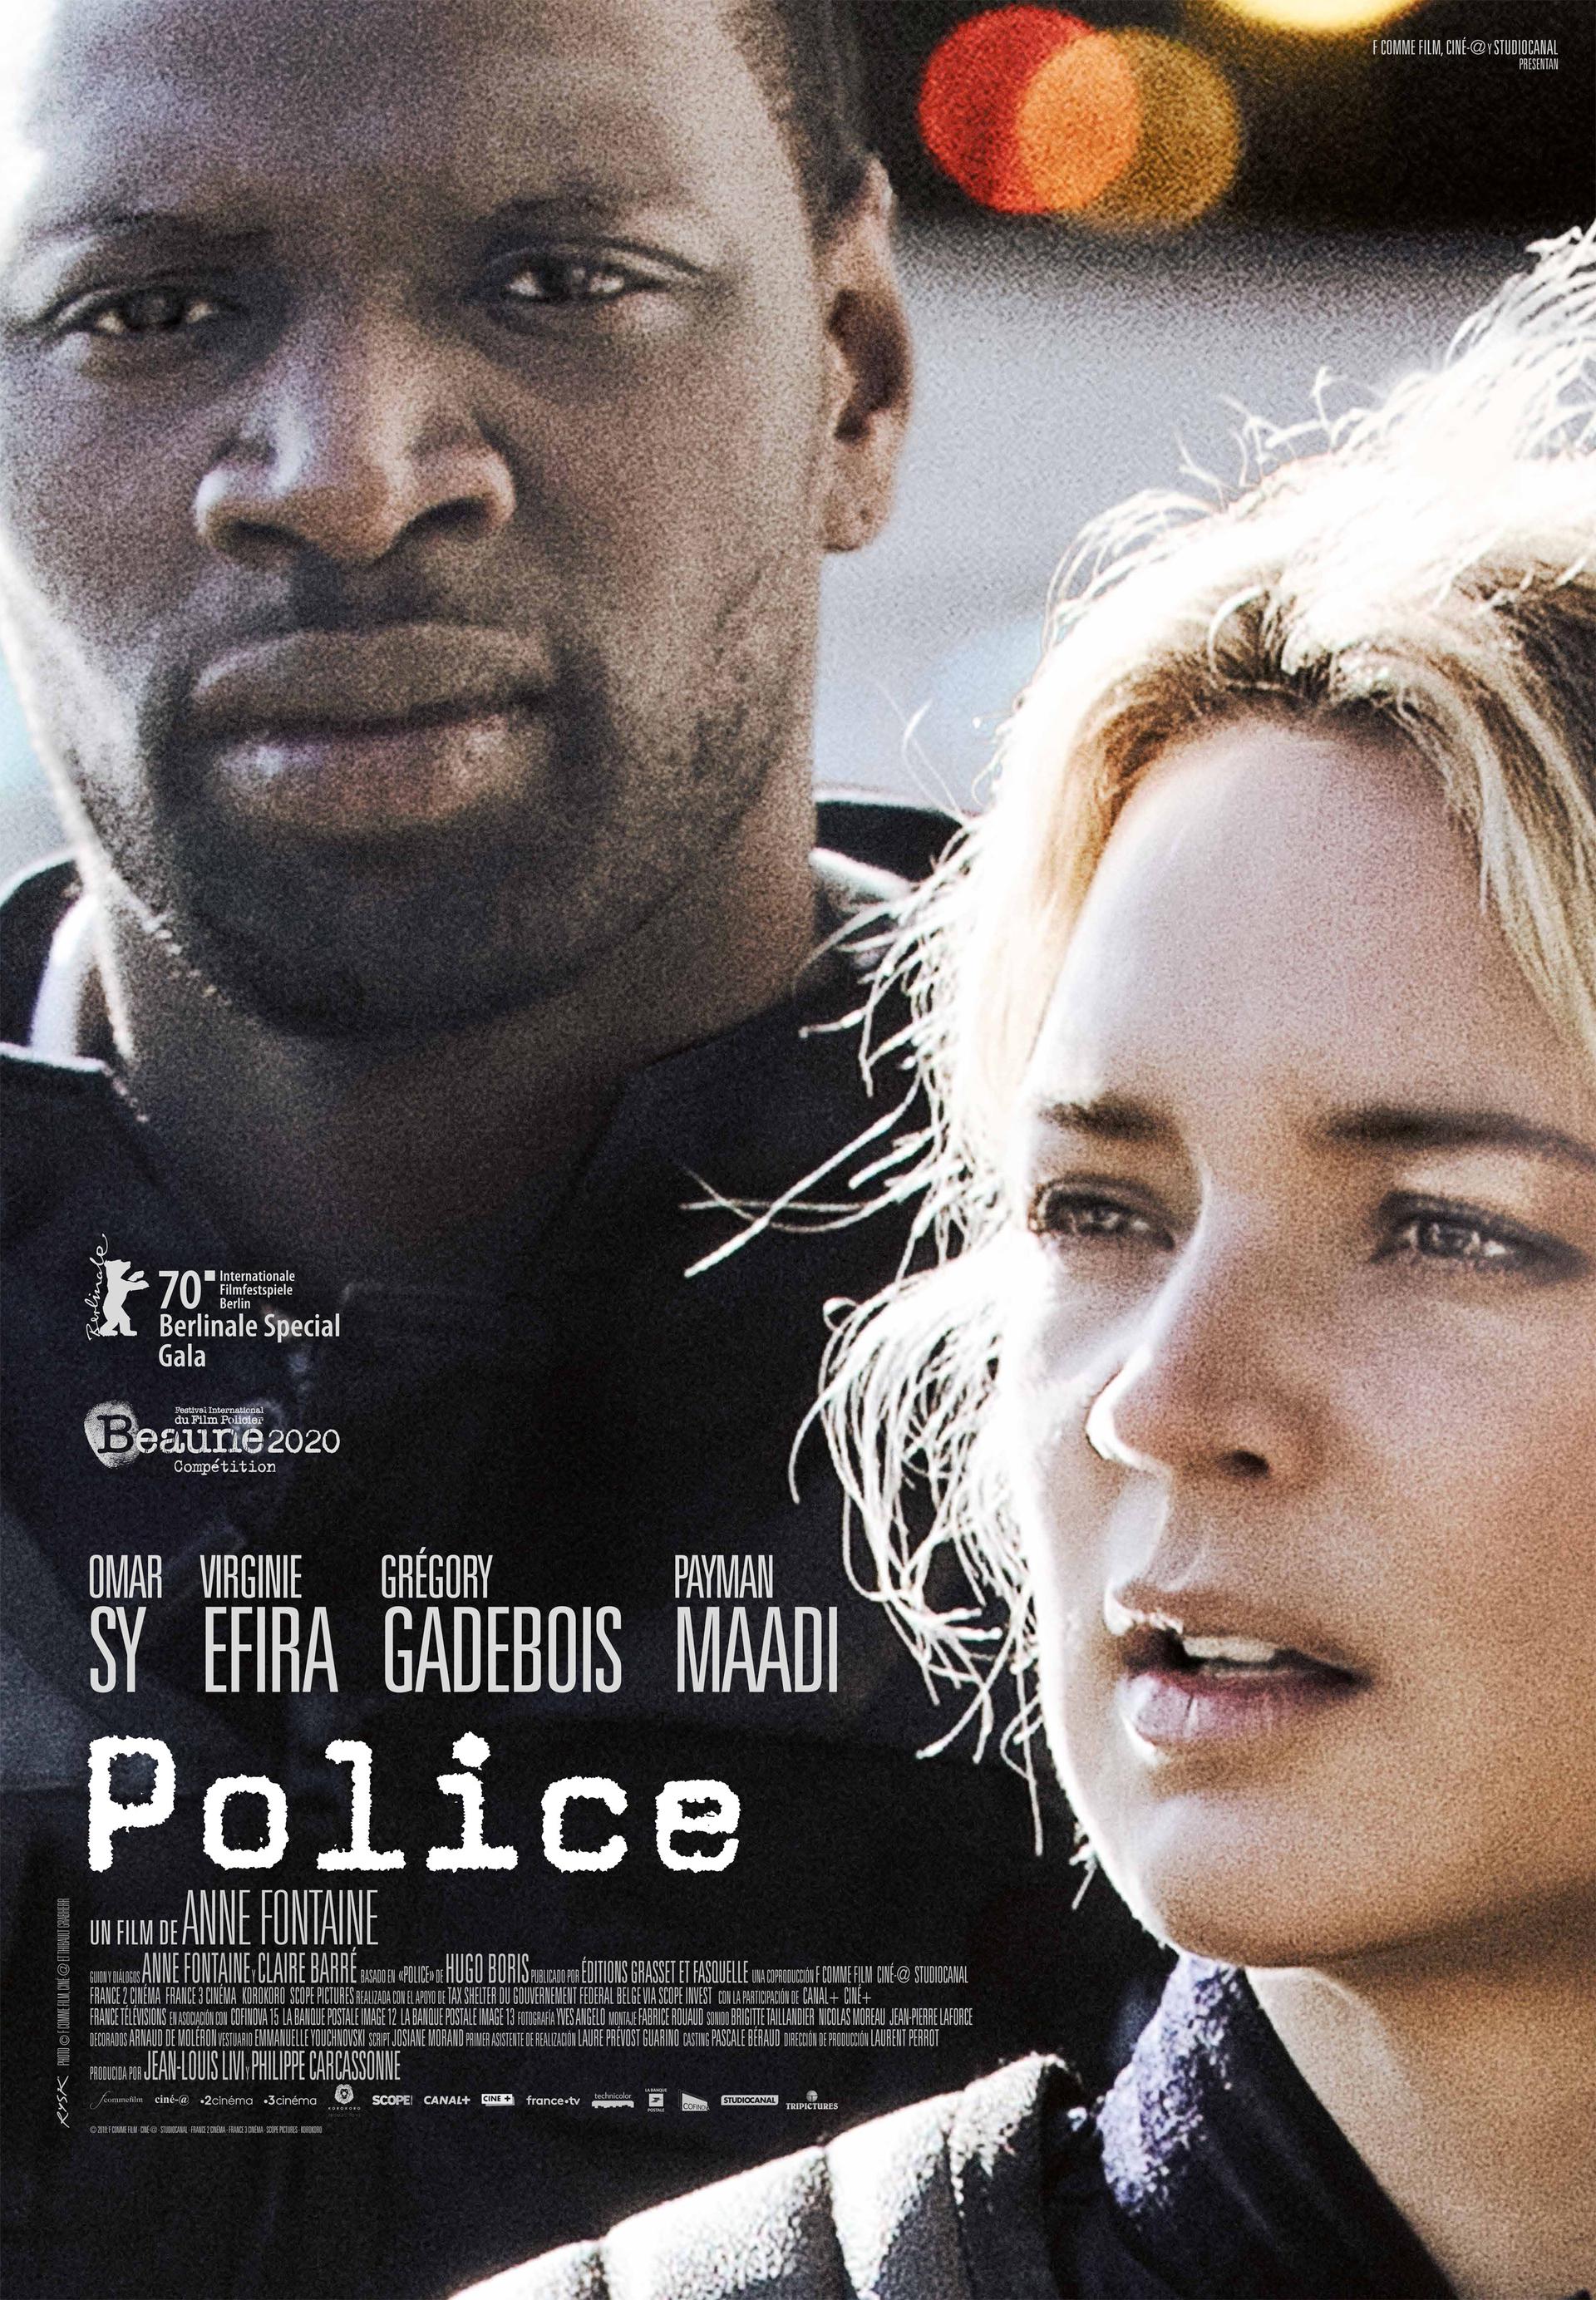 'Police' se estrena en cines el próximo 30 de abril